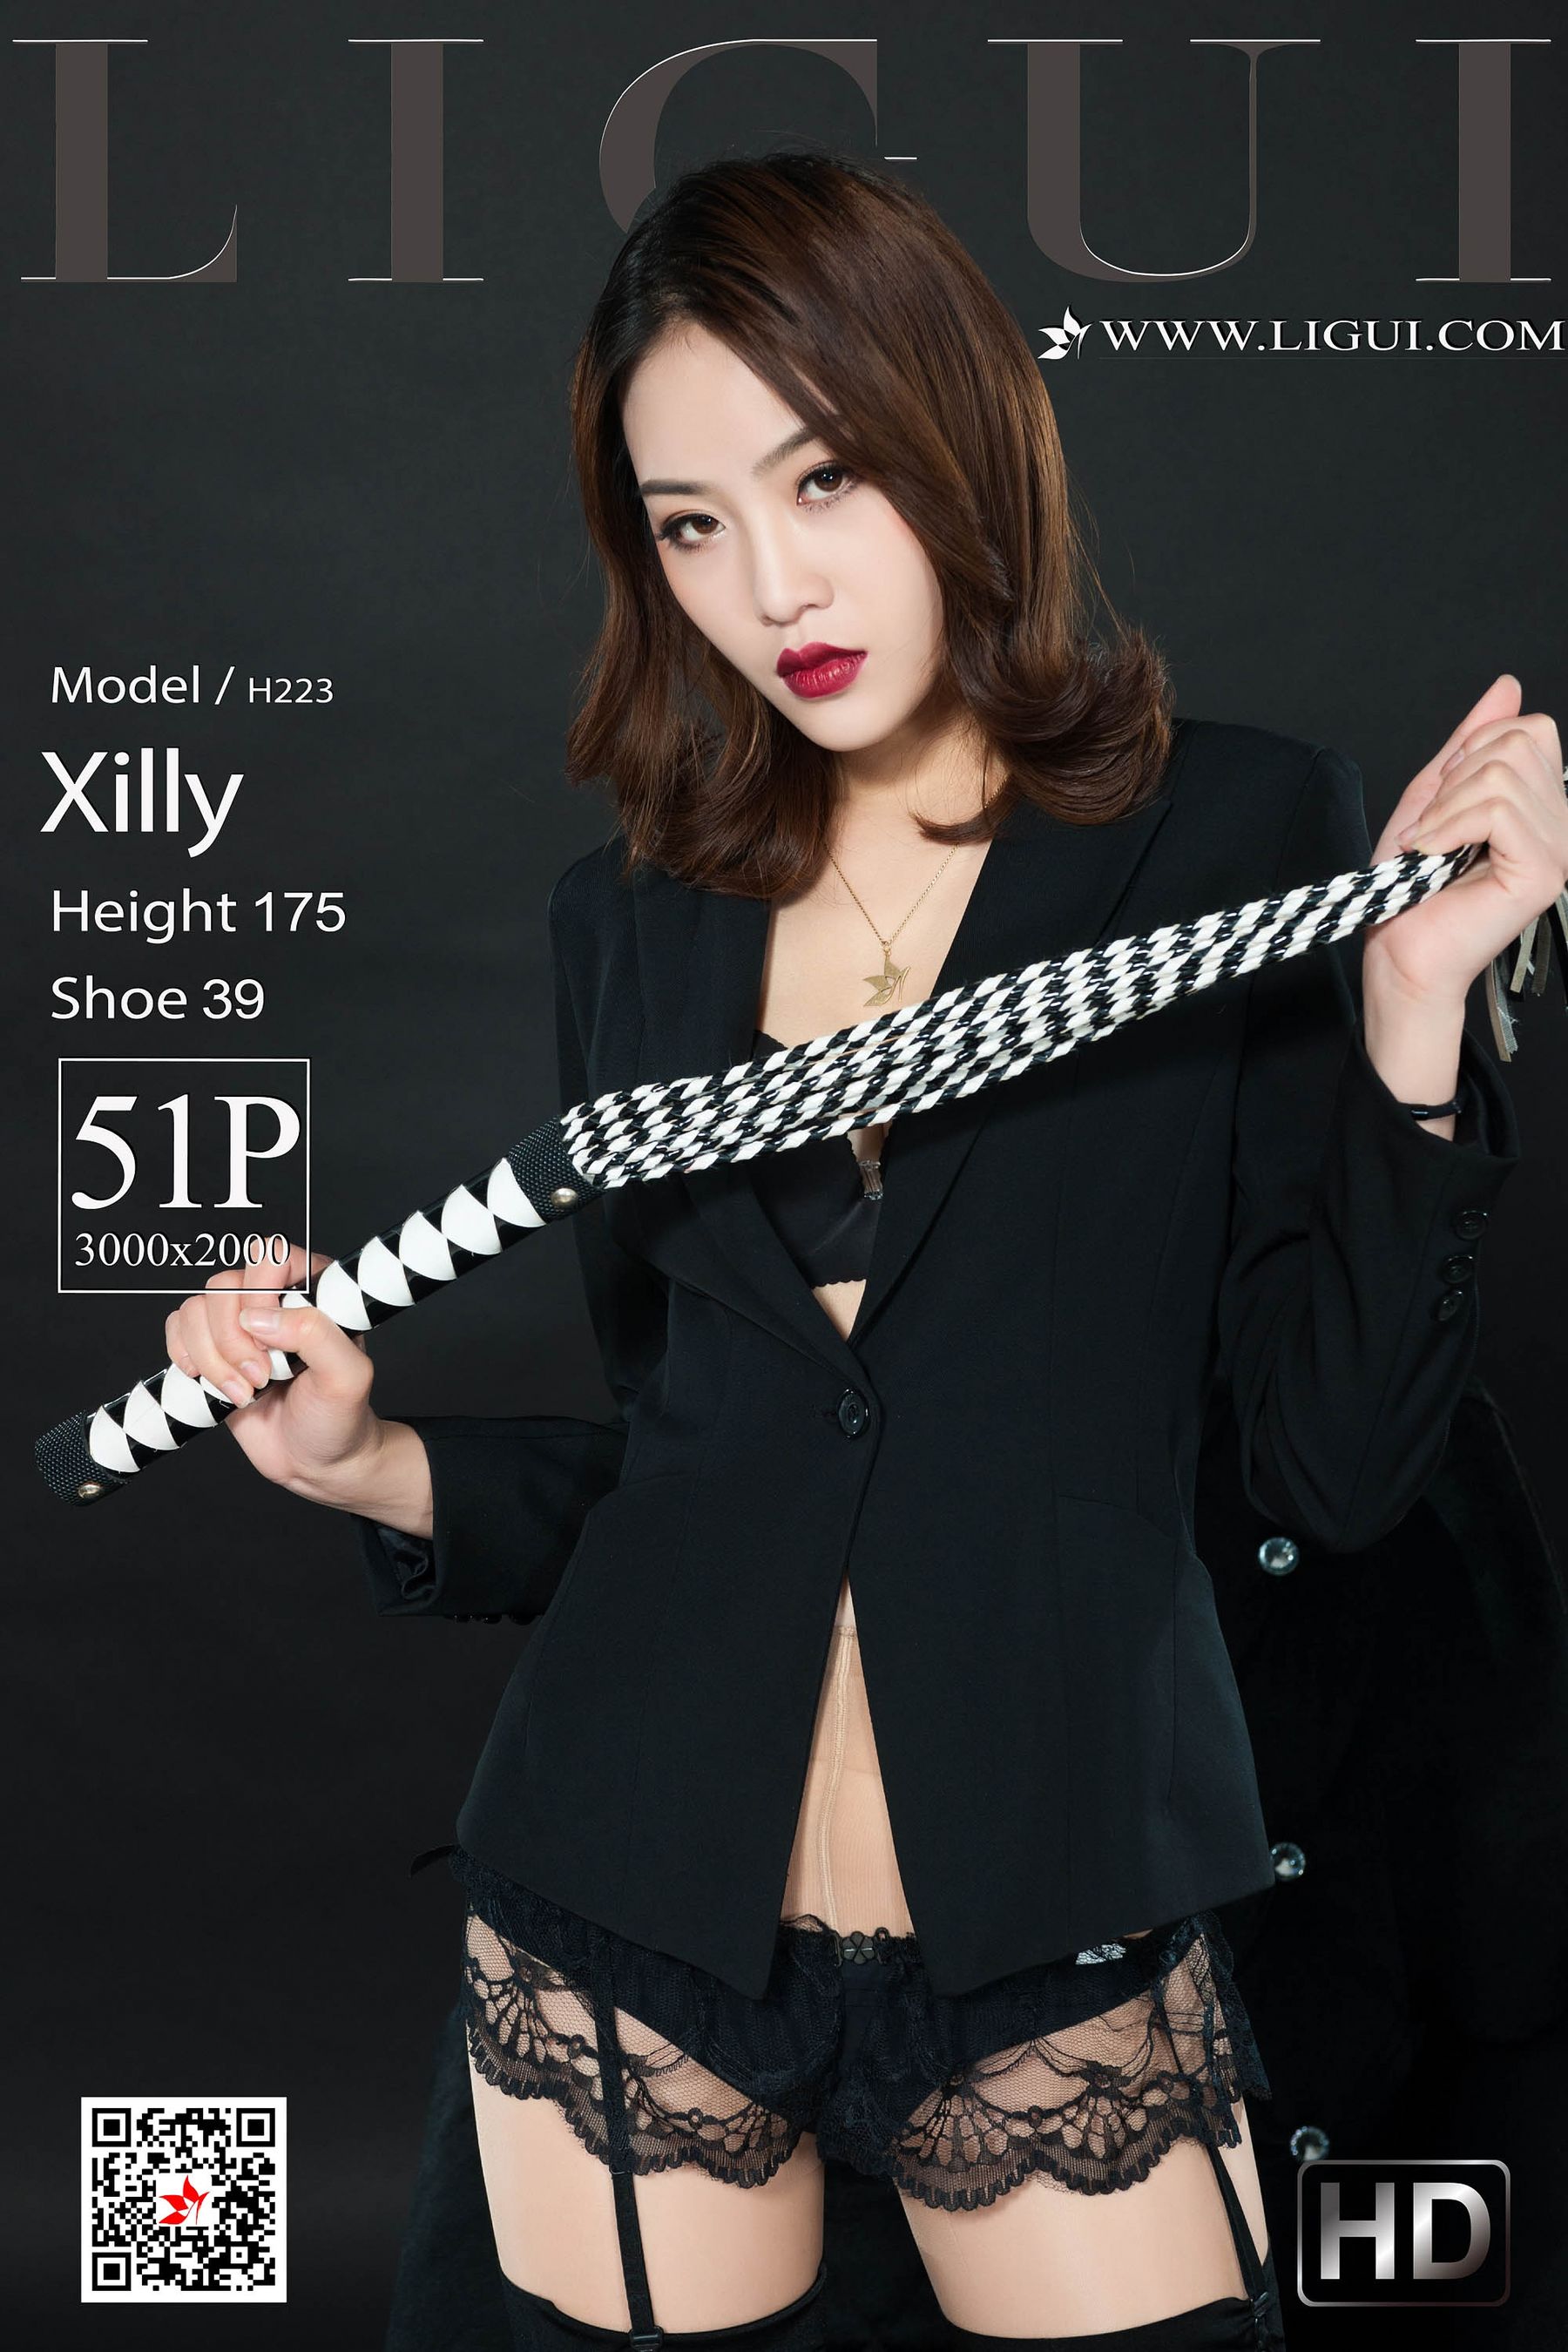 [丽柜Ligui] 网络丽人 Model Xilly  第1张